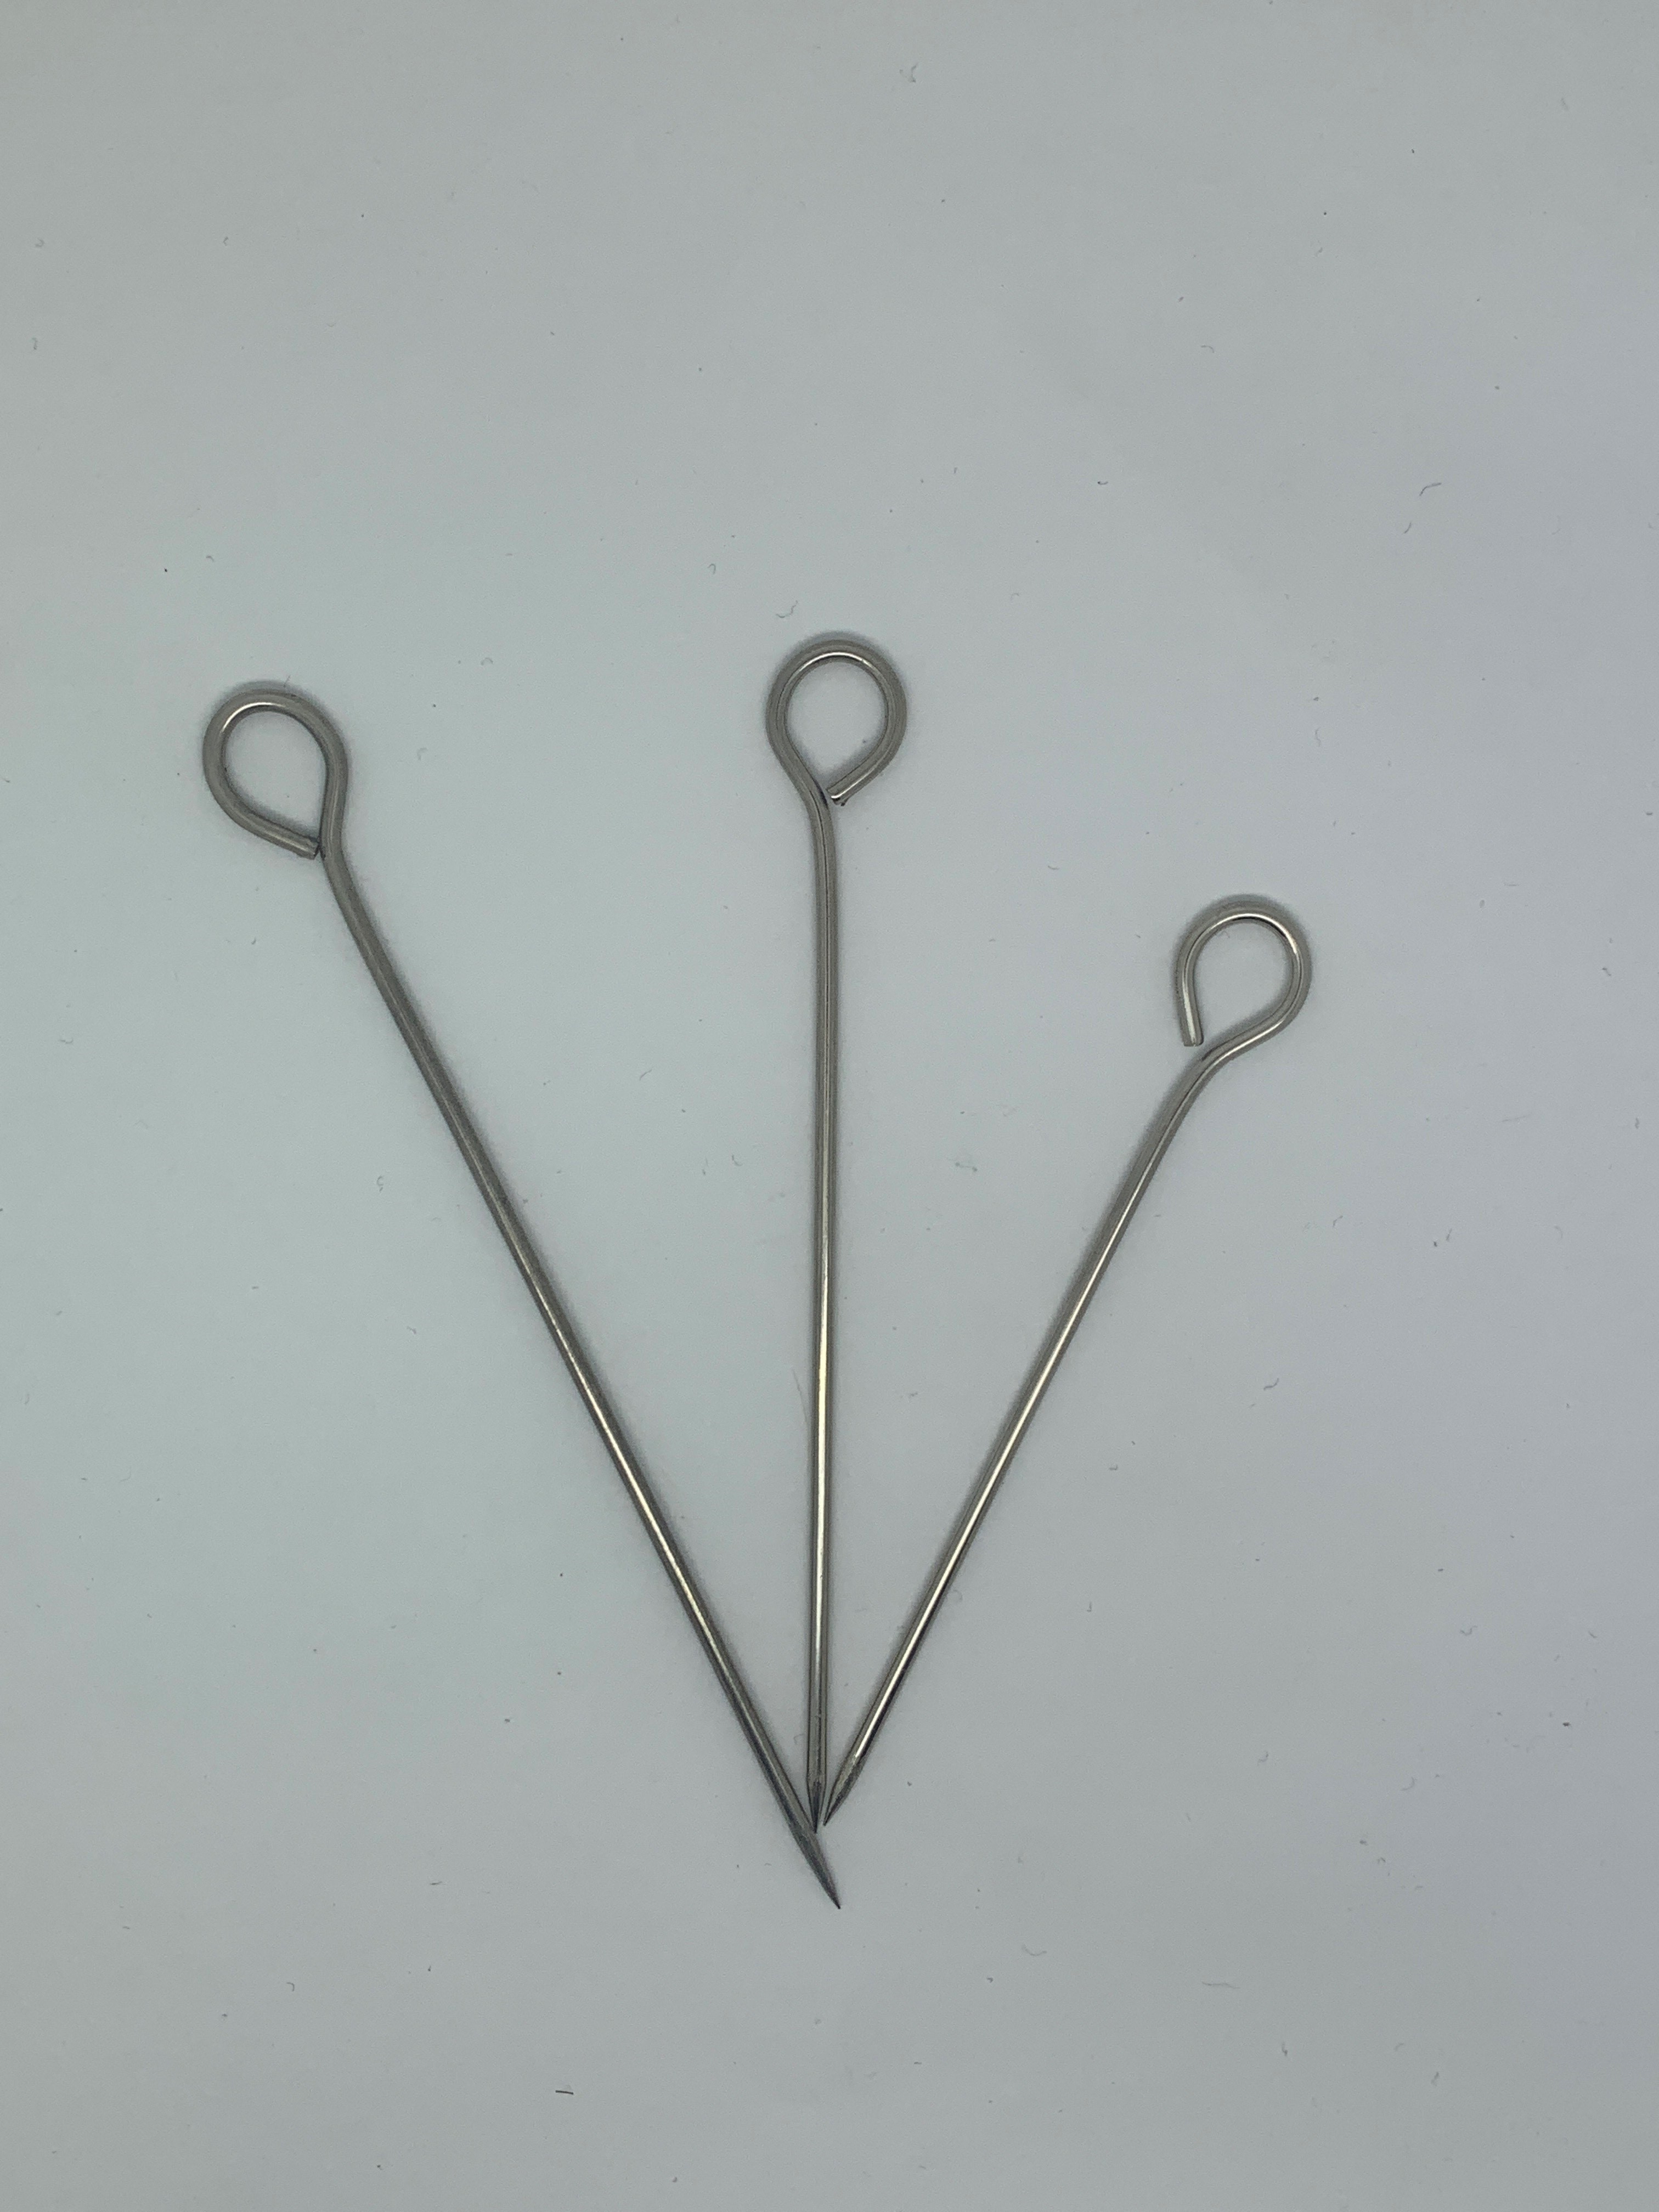 Skewers Pins Needles